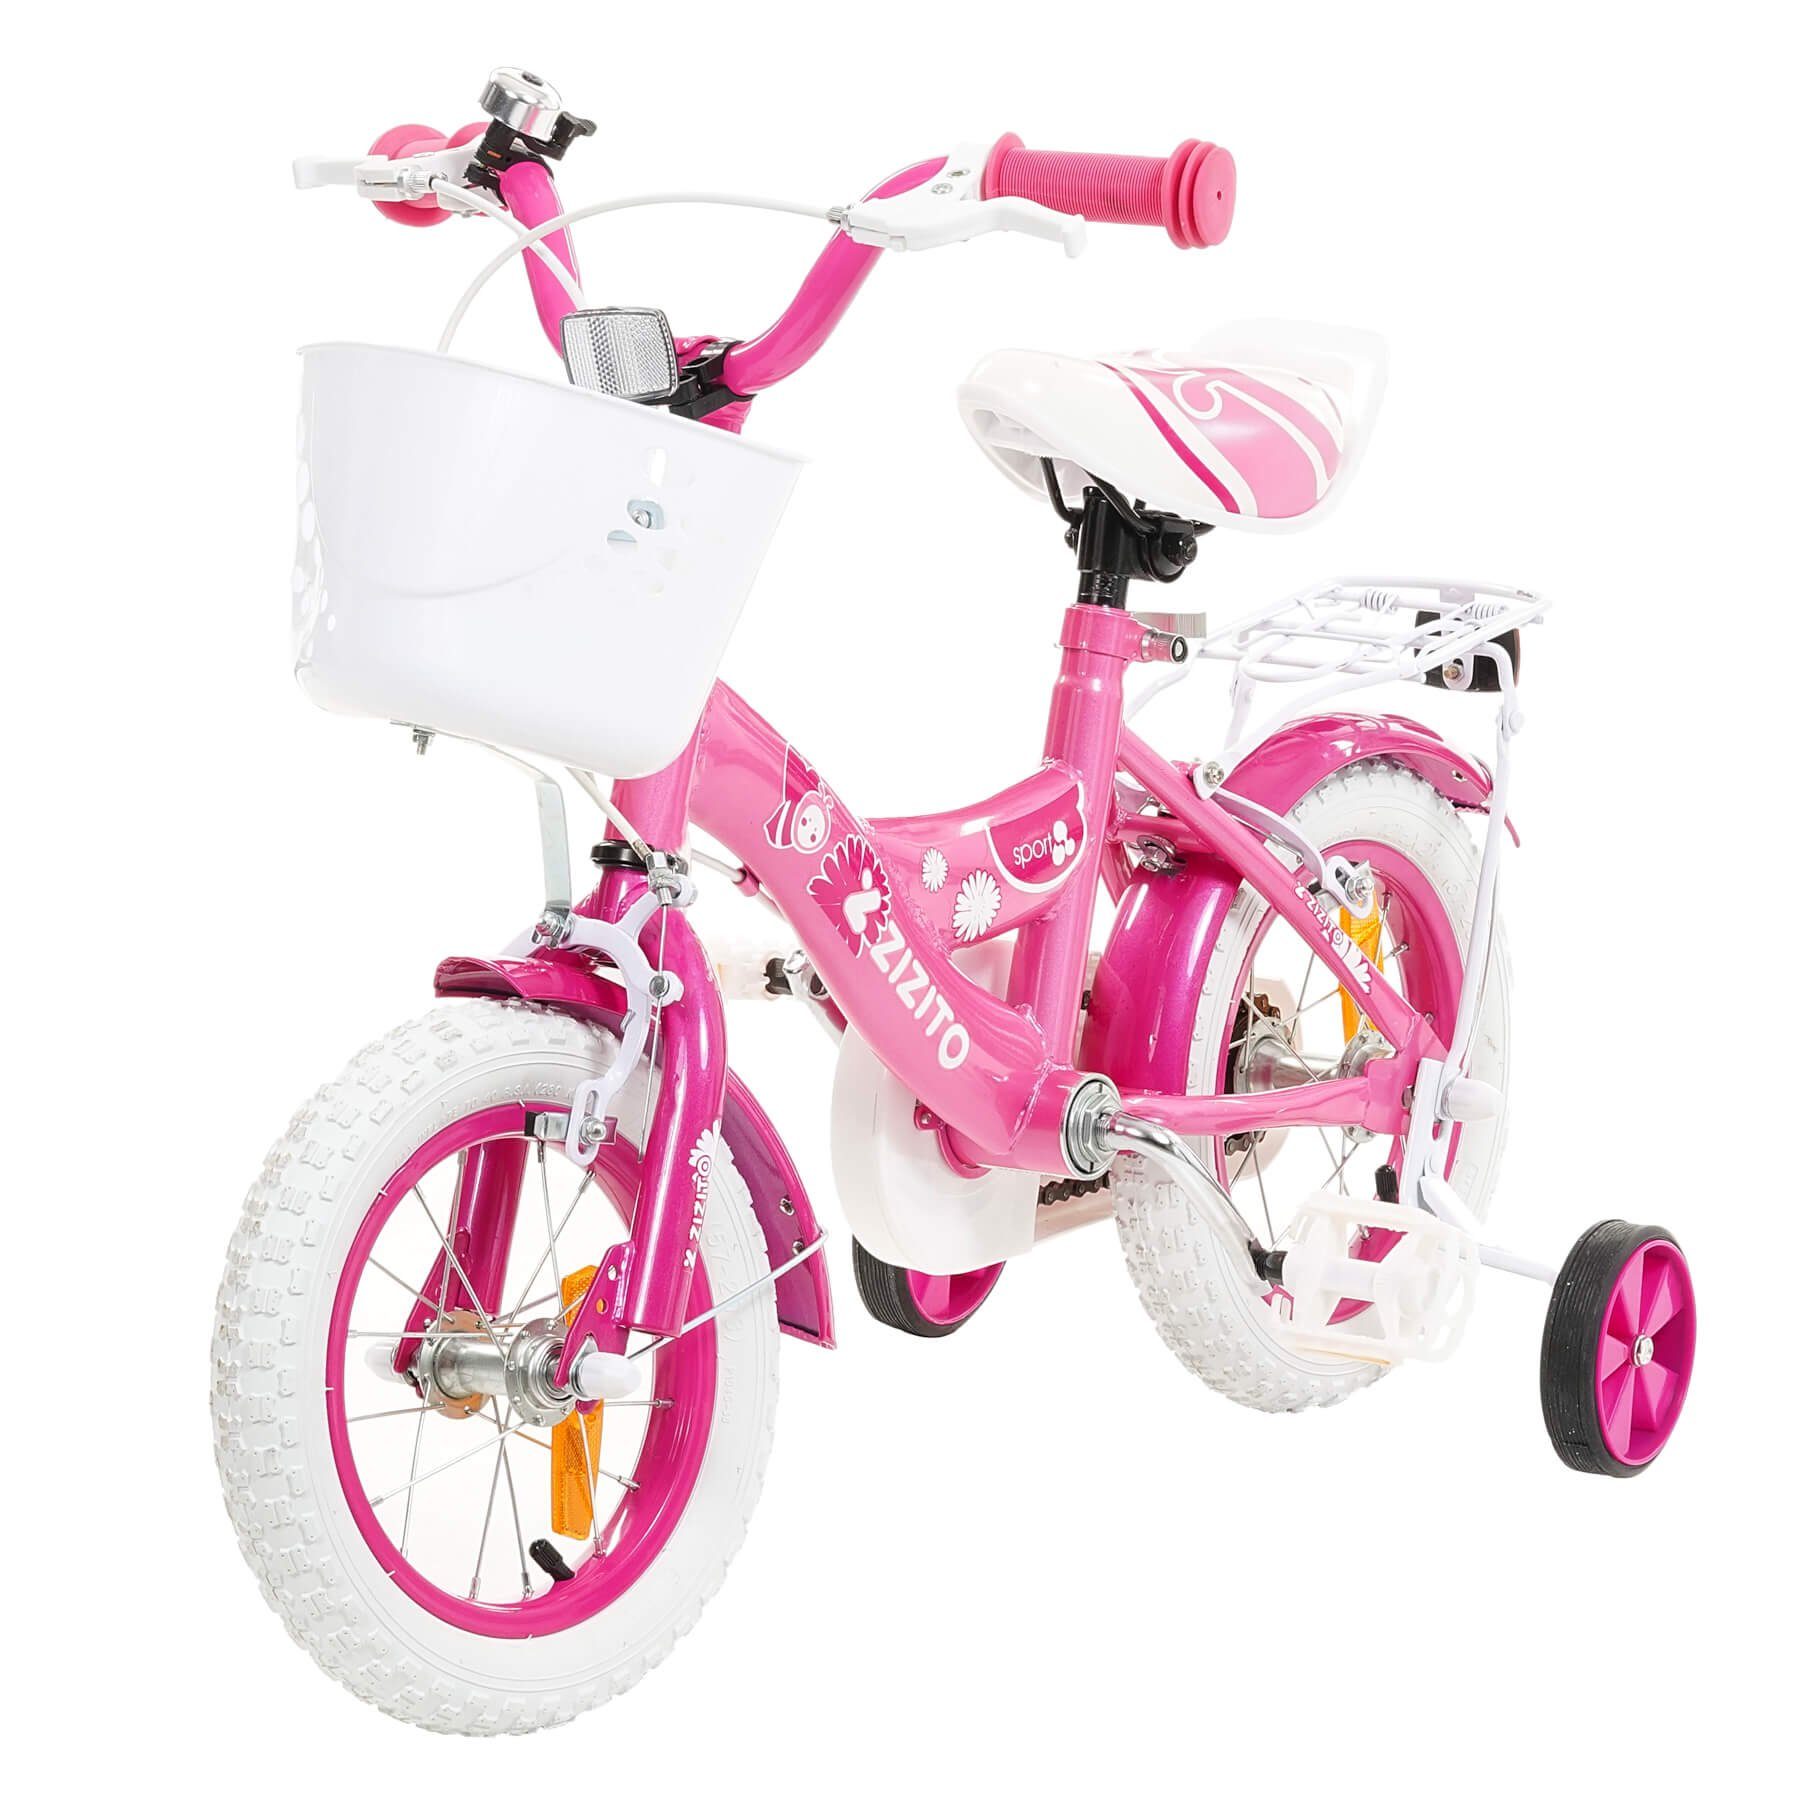 10 Zoll Kinderfahrrad Kinder Fahrrad Bike Rad Disney Minions mit Schiebestange 